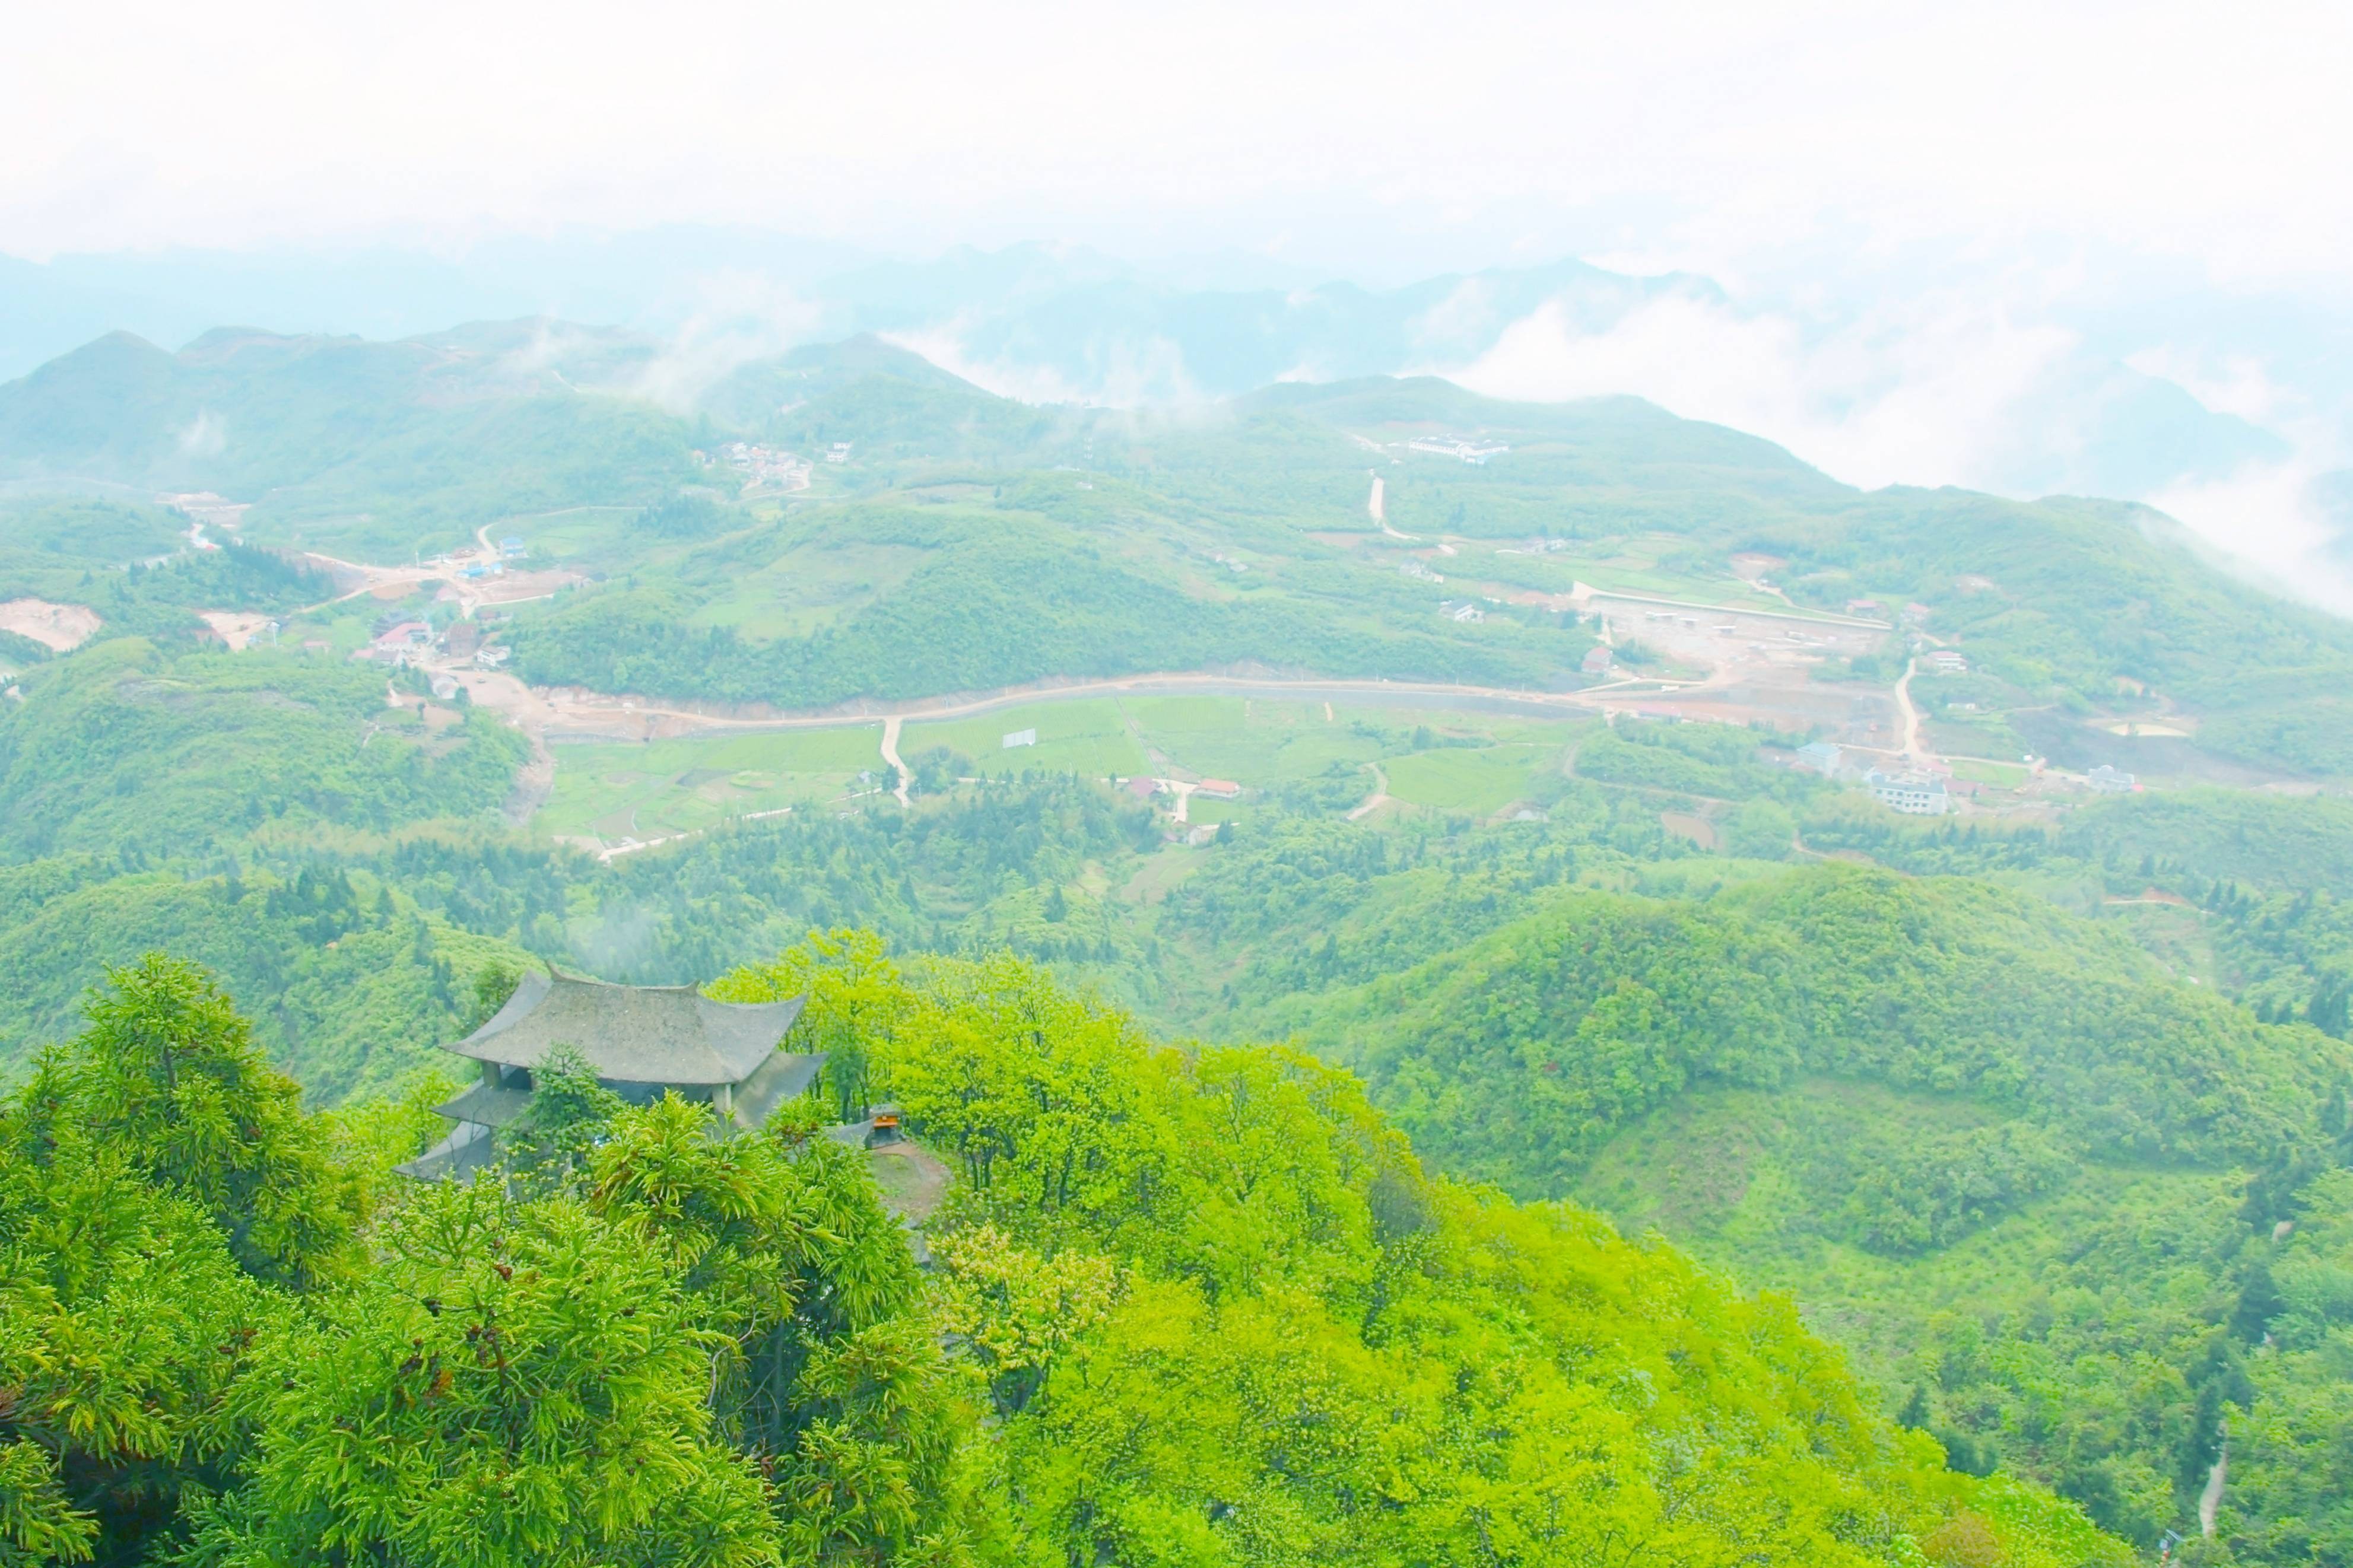 安化云台山风景区图片